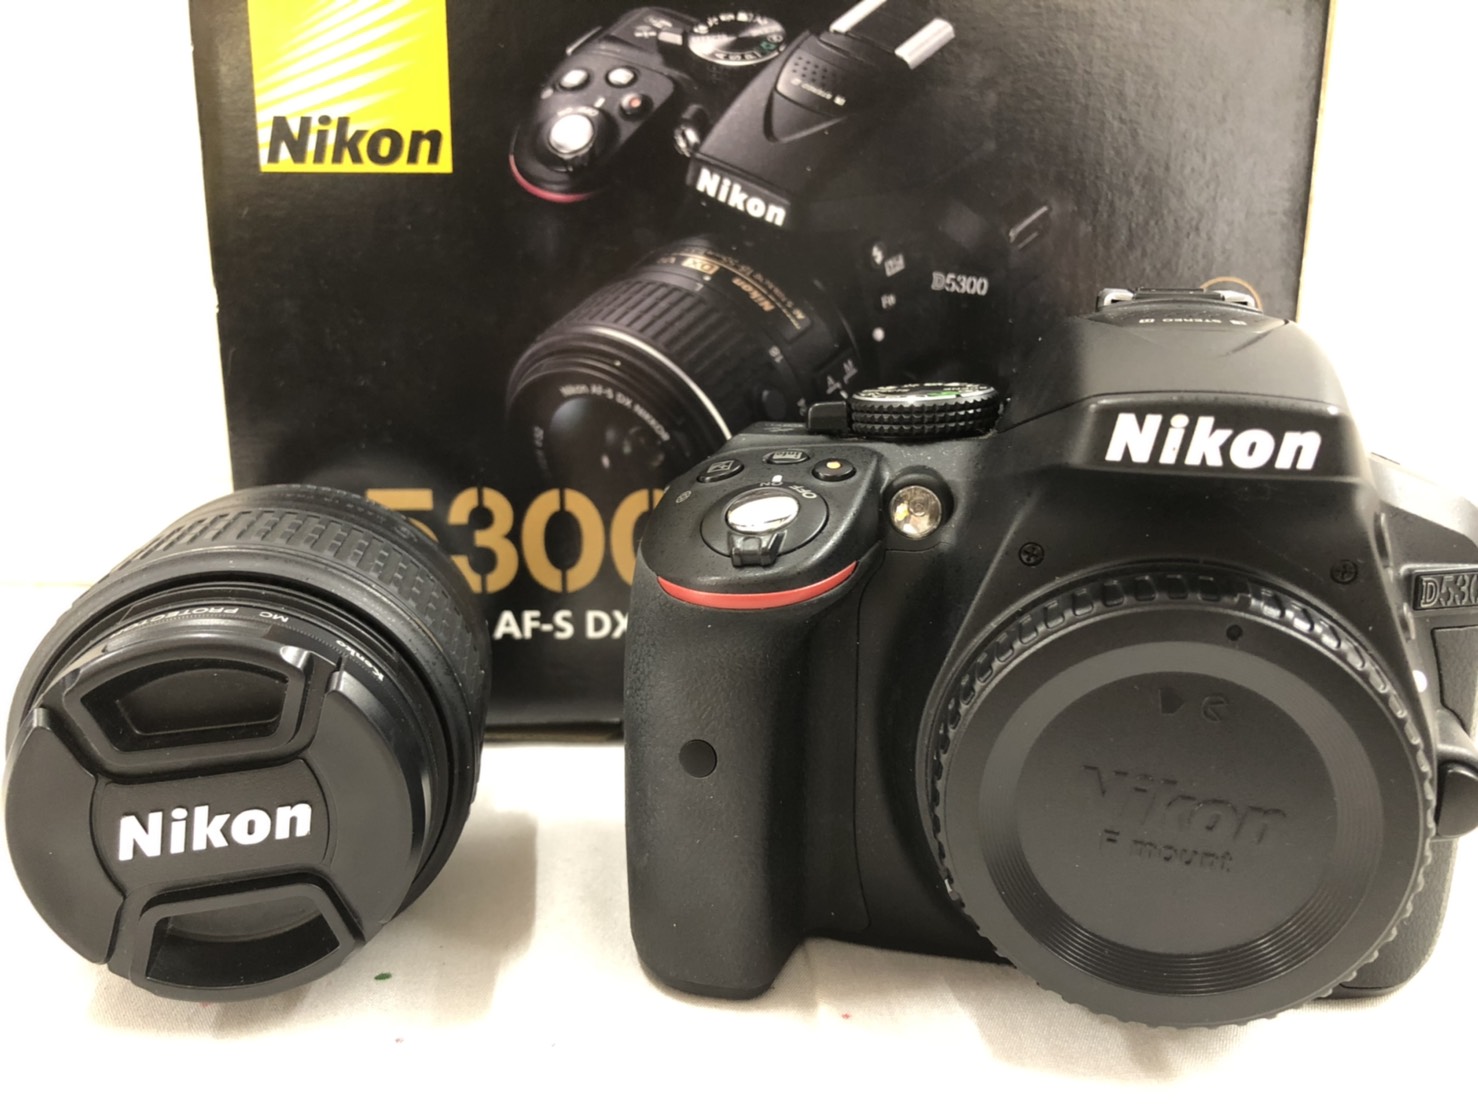 7/12Nikon D5300 AF-S・PENTAX Q10 02お持ちいただきました！ #Nikon 